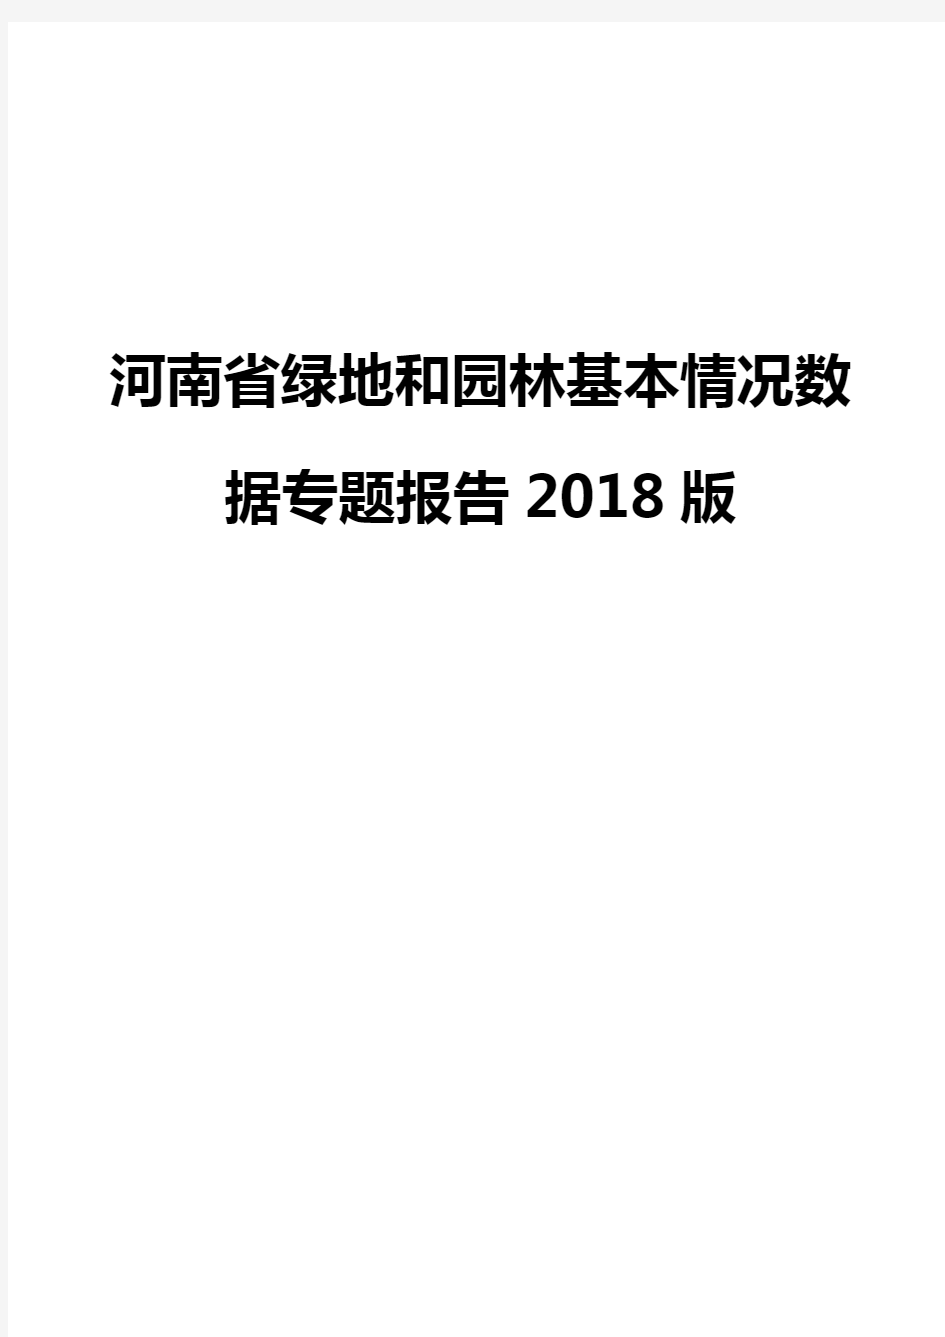 河南省绿地和园林基本情况数据专题报告2018版